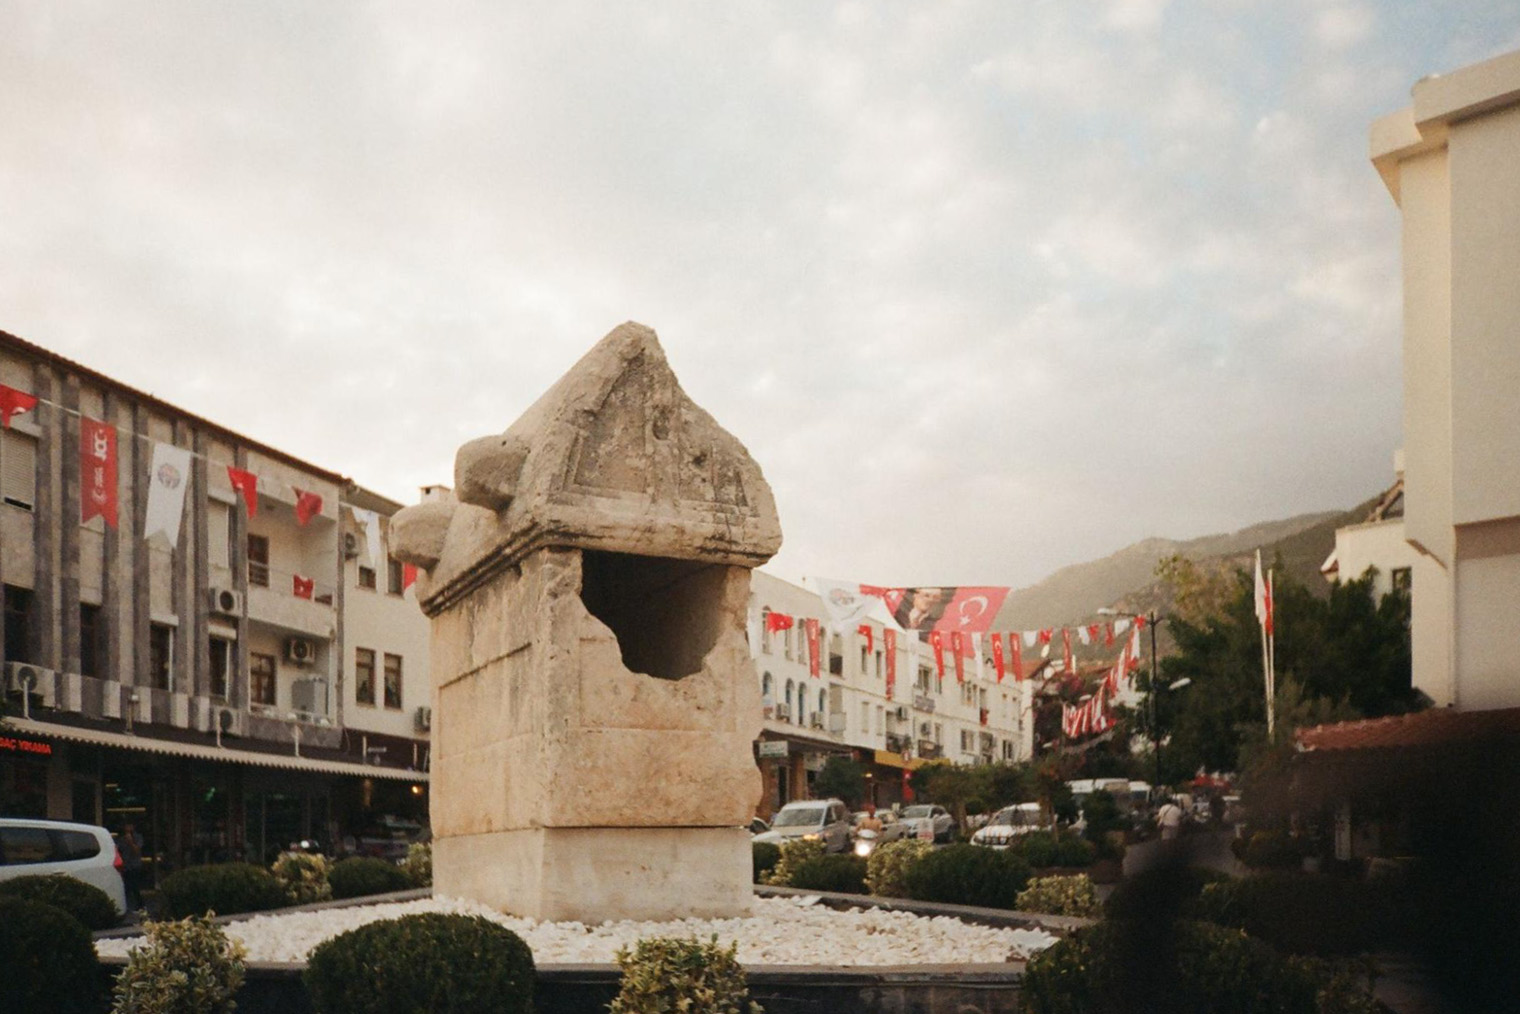 Гробница на бульваре Ататюрка похожа на Королевскую: у нее такая же форма крышки и четыре барельефа на скатах